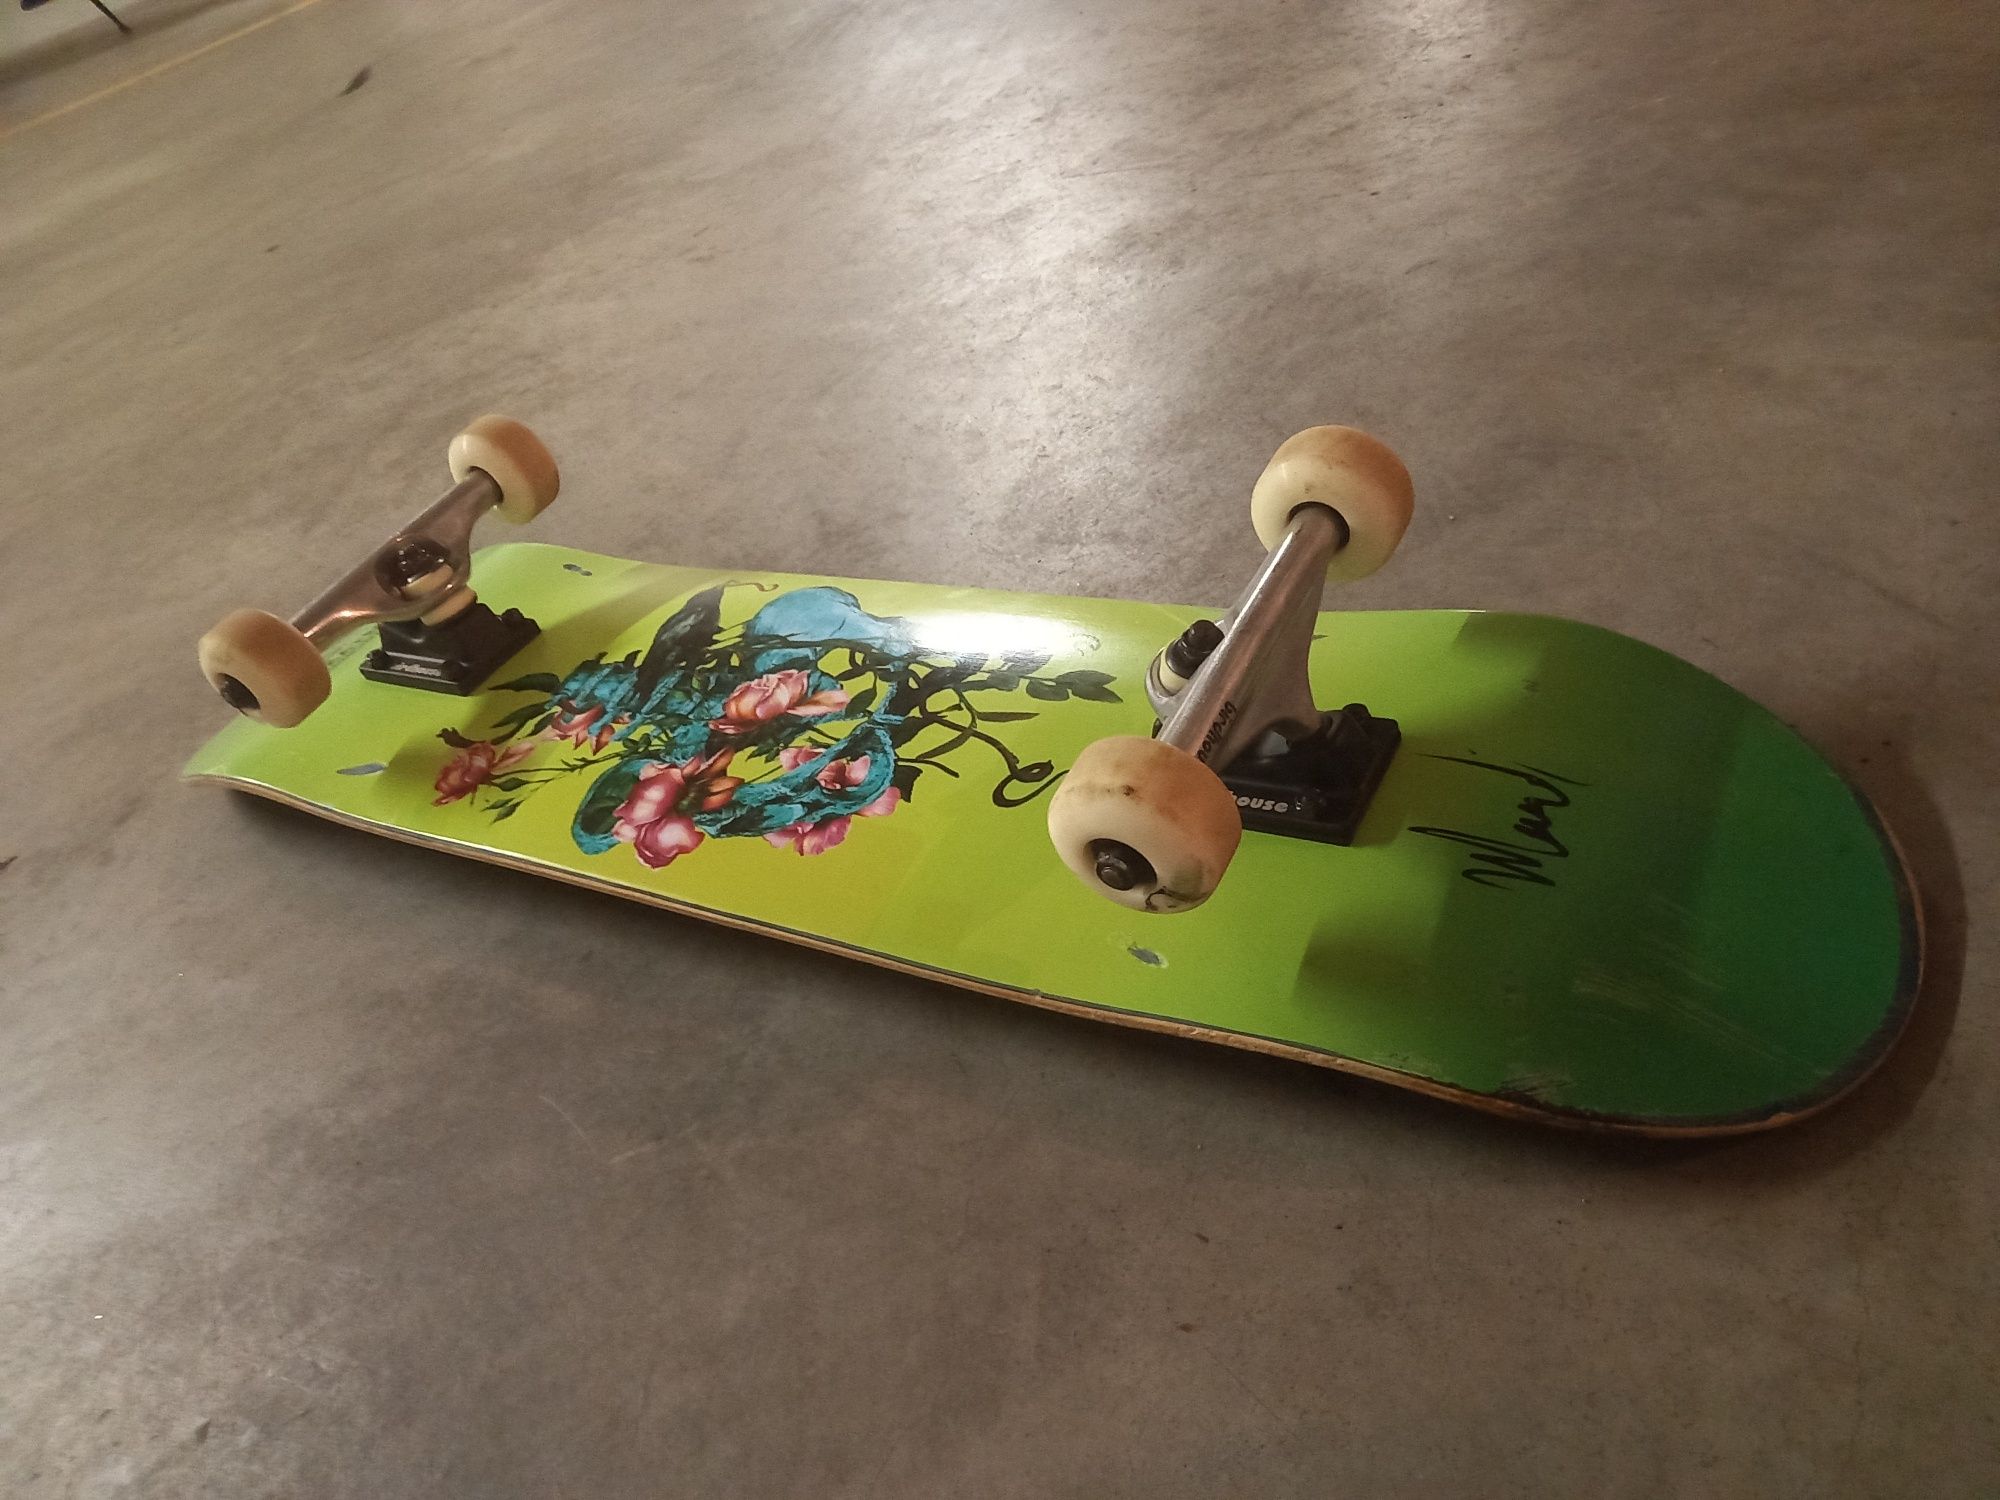 Skate com deck Bodskateco + hardware e rodas birdhouse